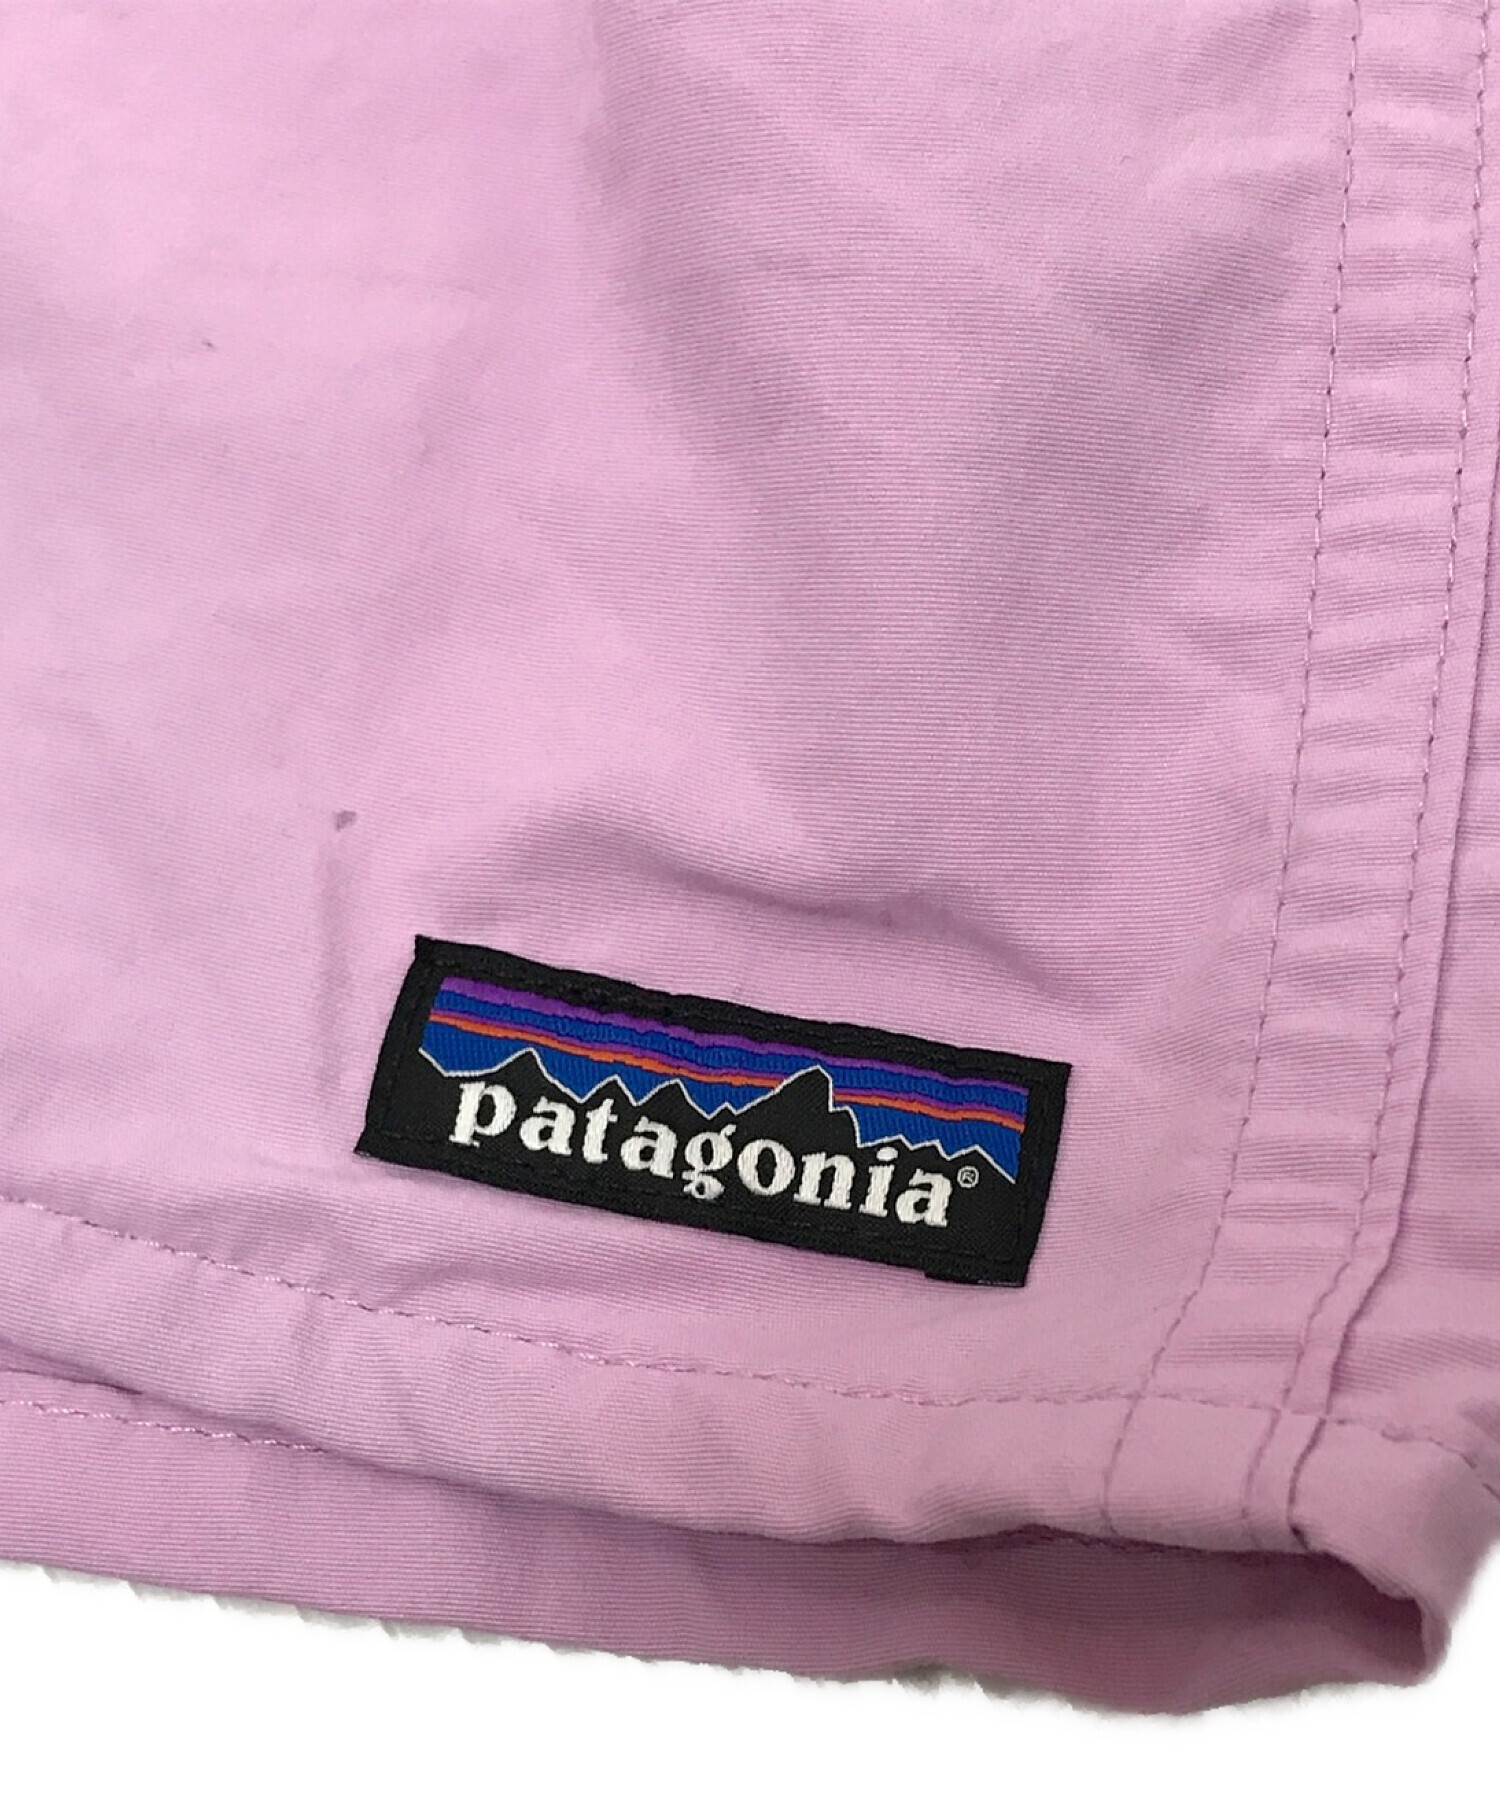 Patagonia (パタゴニア) バギーズショーツ ピンク サイズ:M